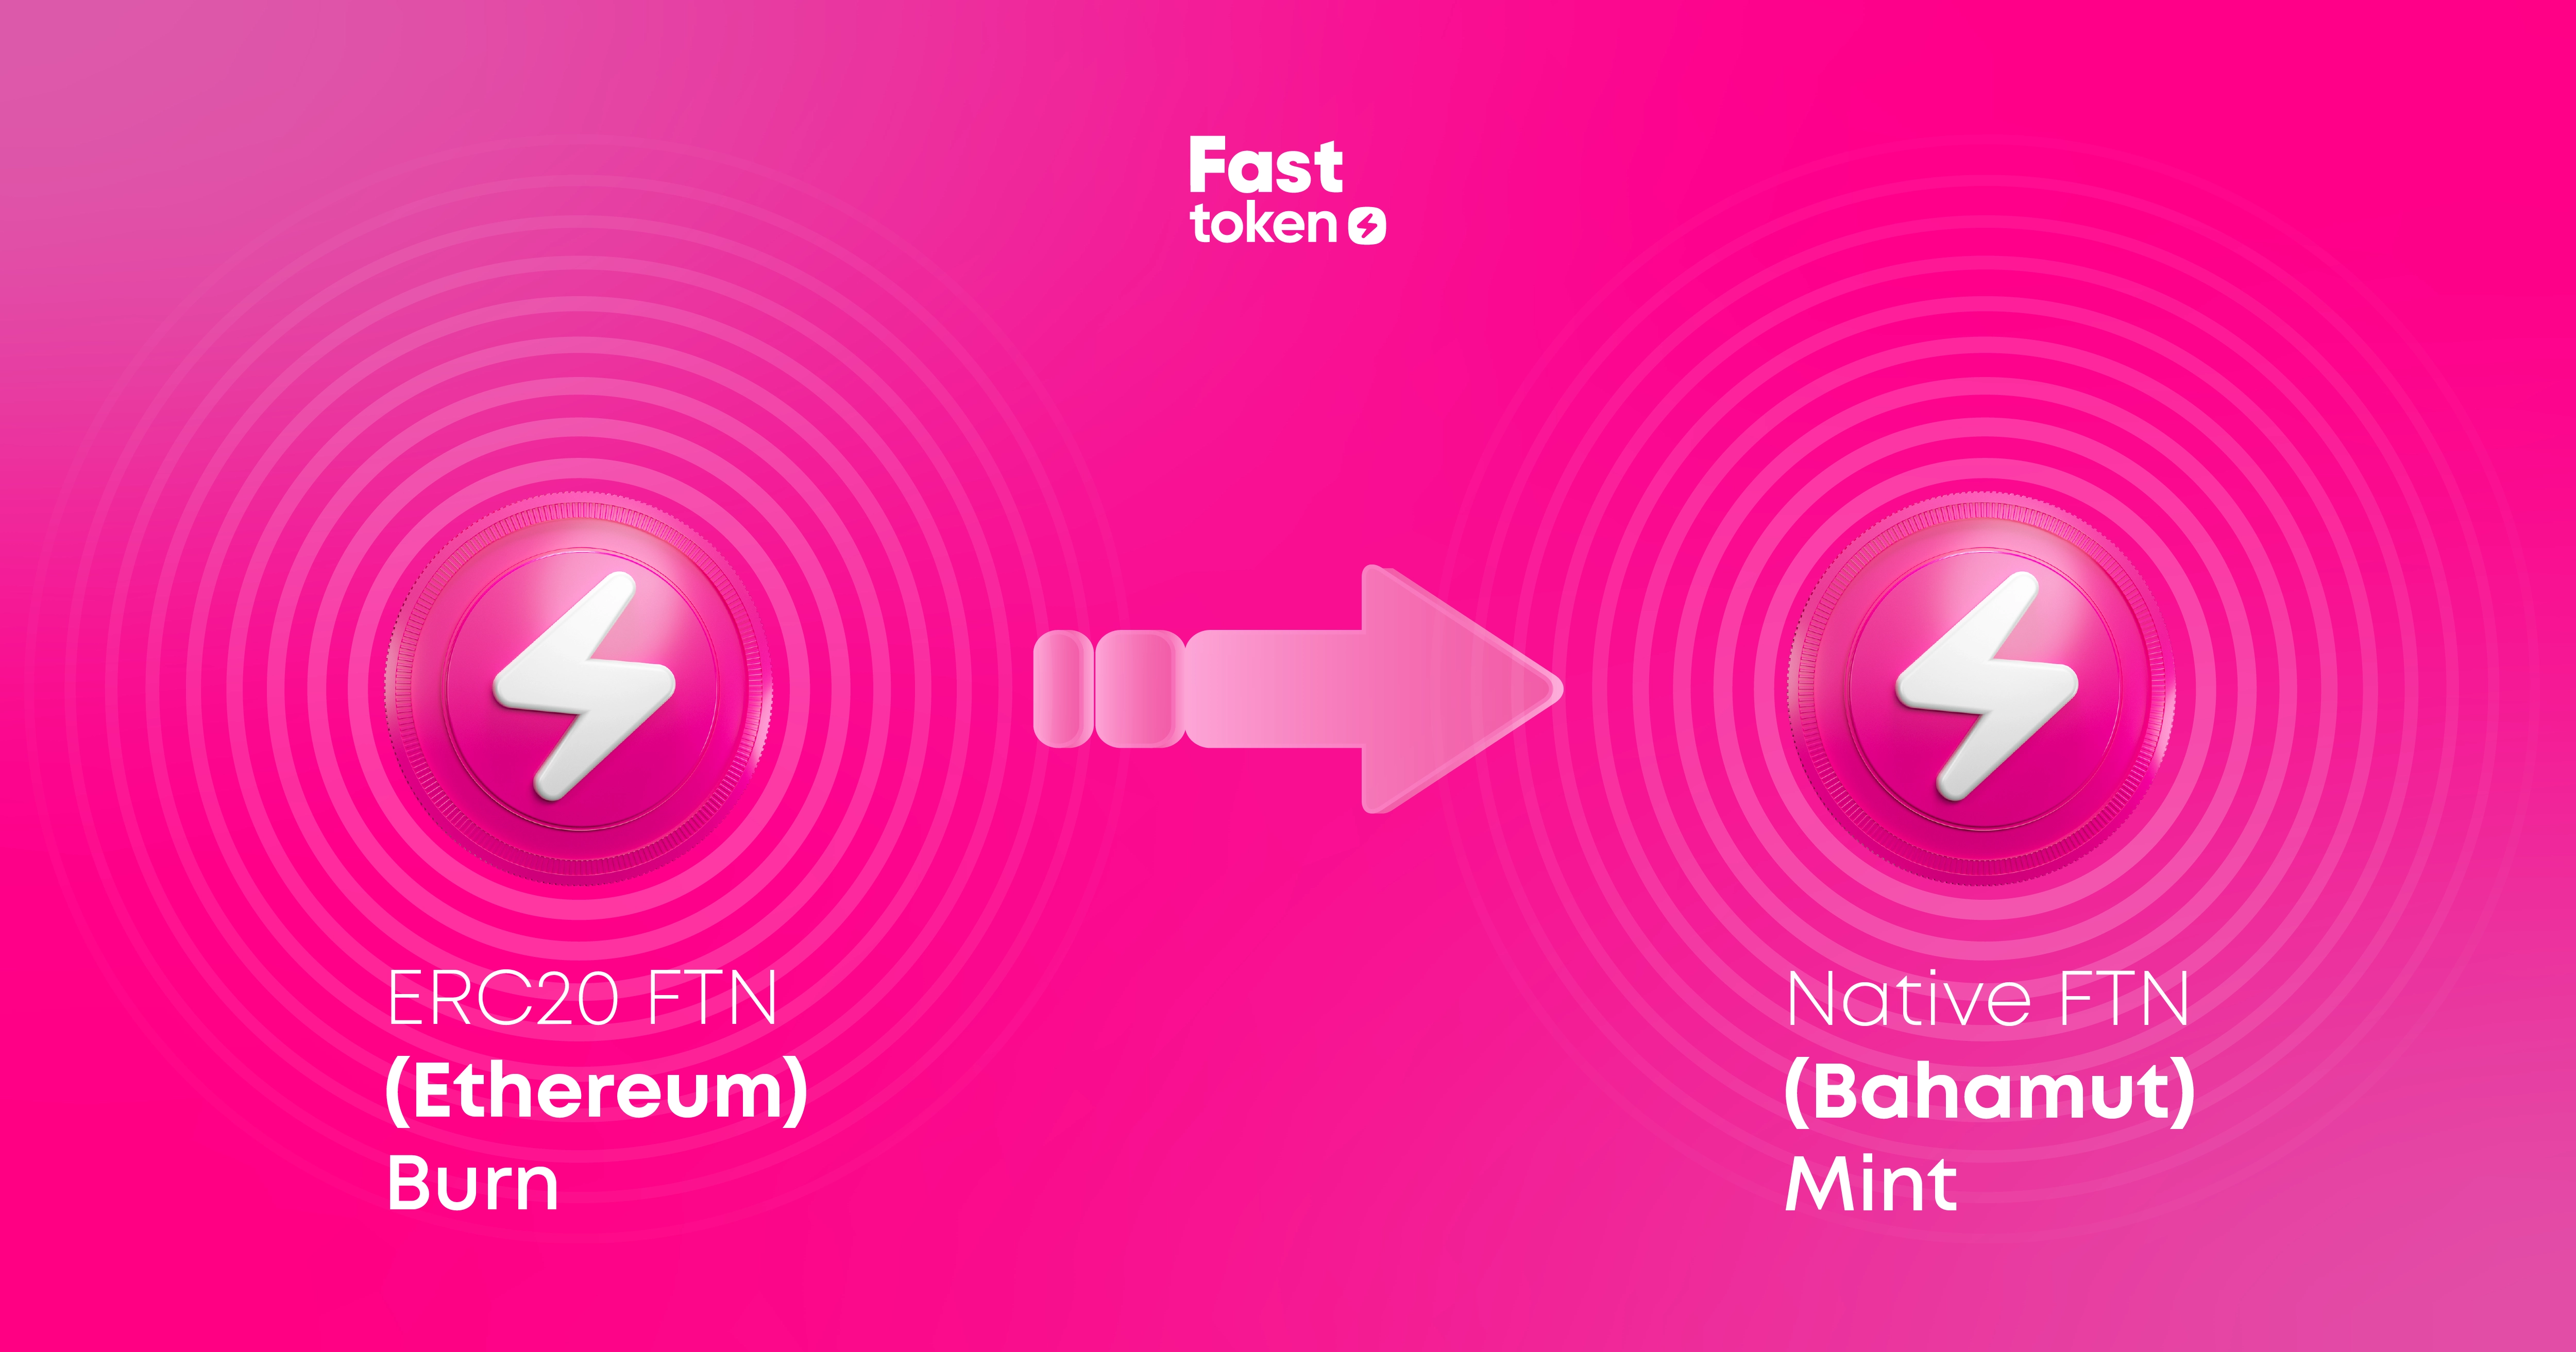 يسمح Fastex مالكي Fasttoken (FTN) بنقل التوكِن من بلوكتشين إيثيريوم إلى Fastex Chain